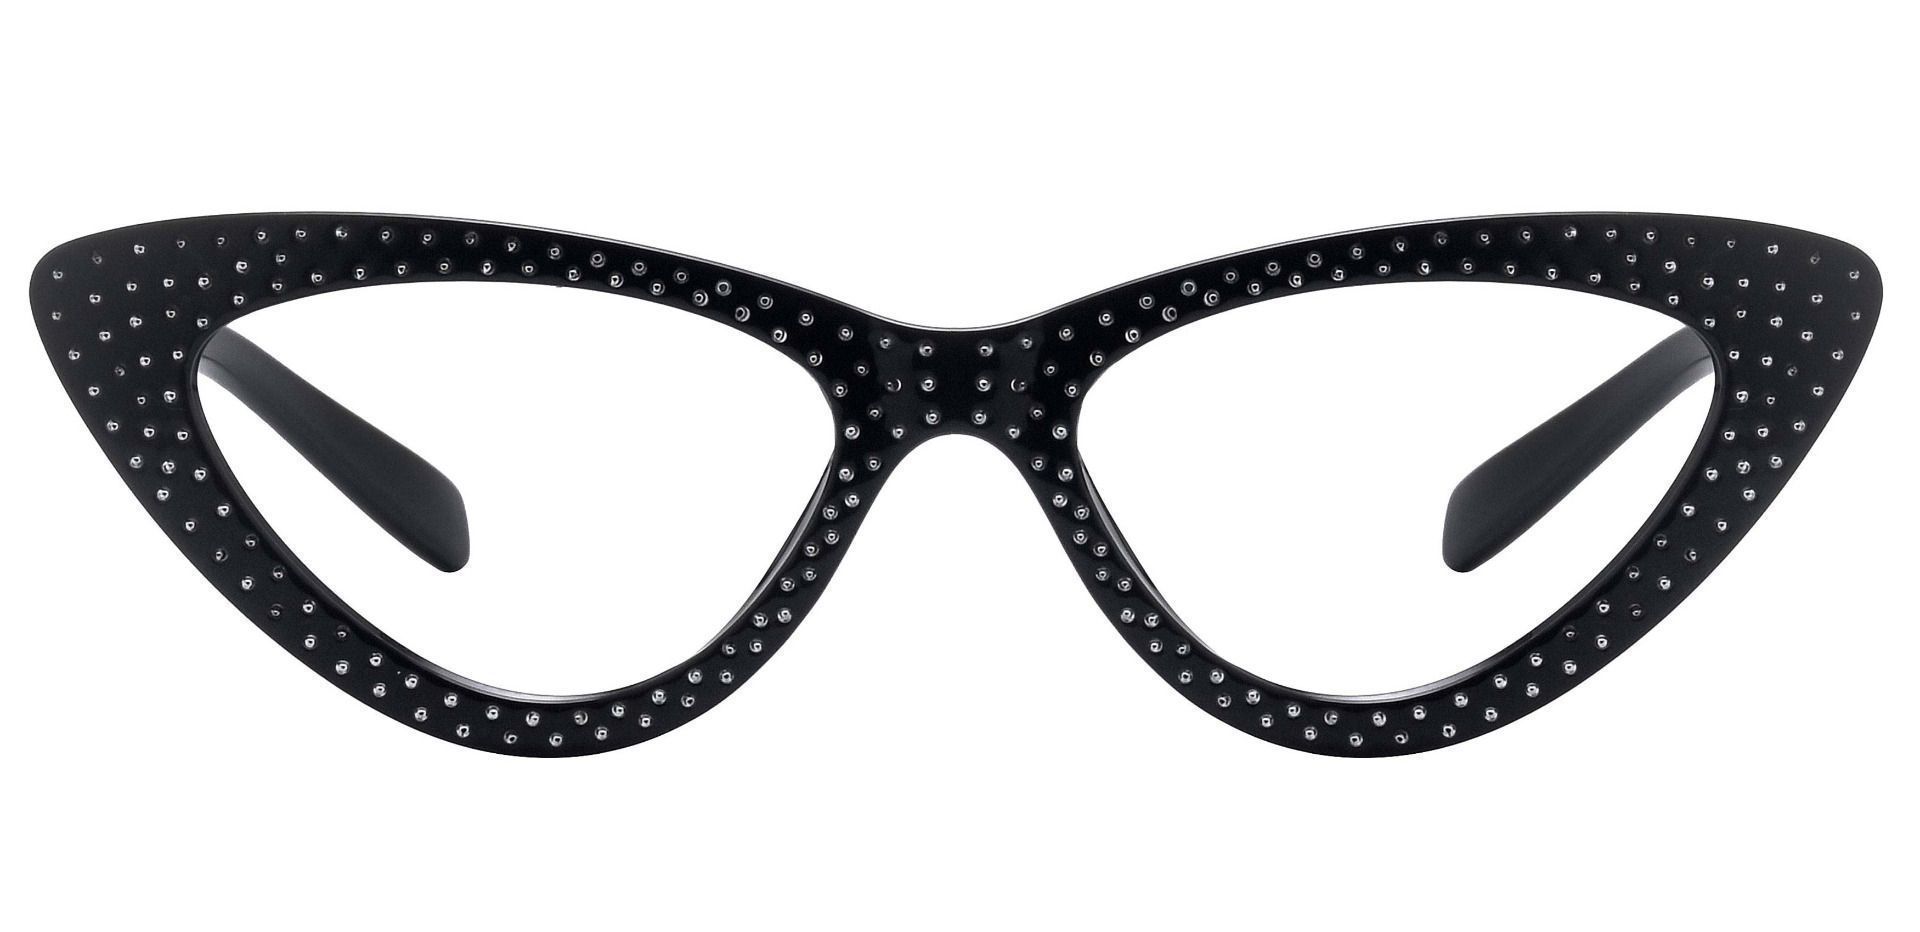 Sharpay Cat-Eye Prescription Glasses - Black | Women's Eyeglasses ...